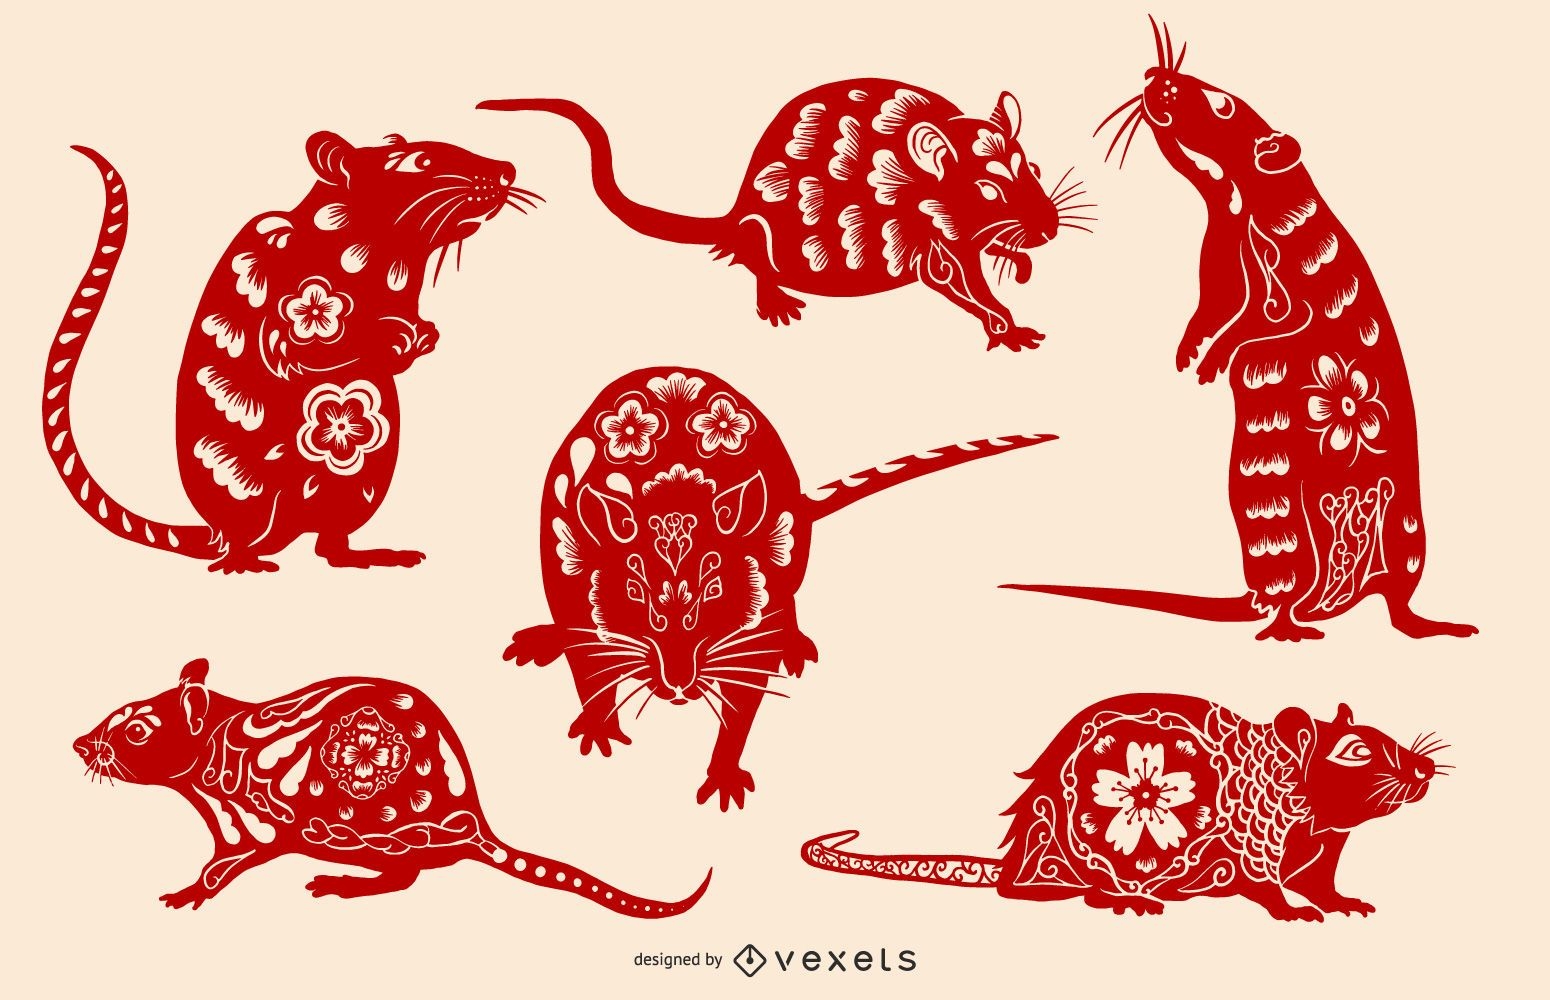 Chinesisches Neujahr 2020 Ratte Illustration Set